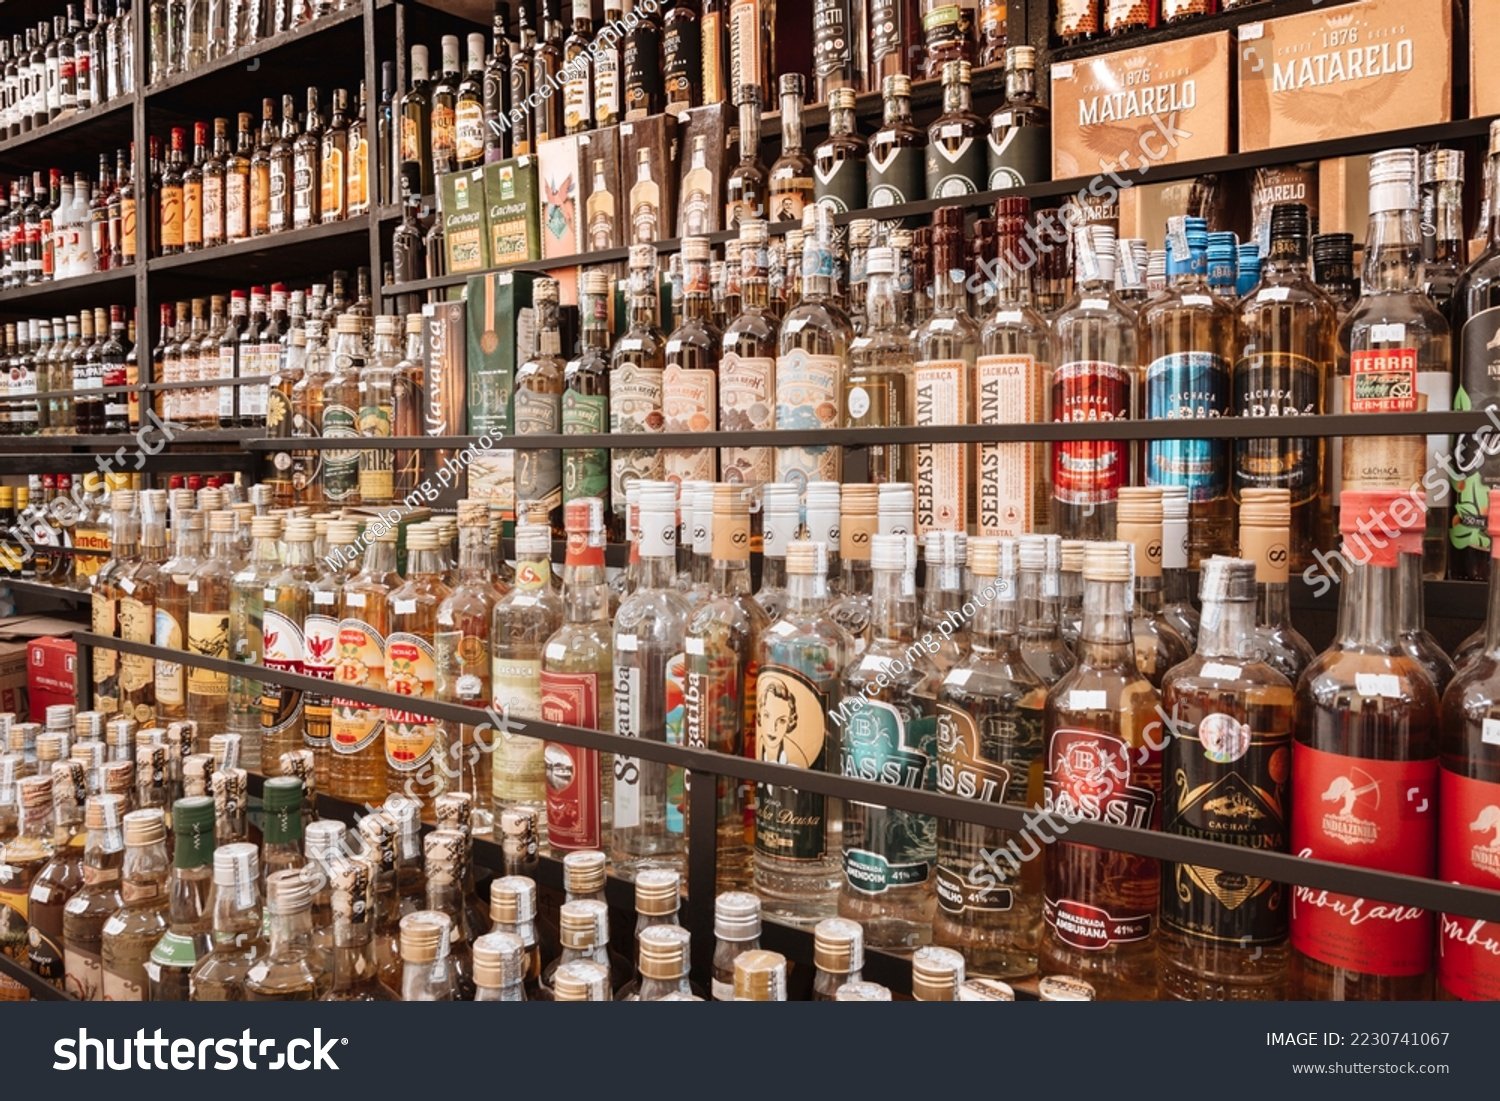 variedad de licores en estanteria de tienda